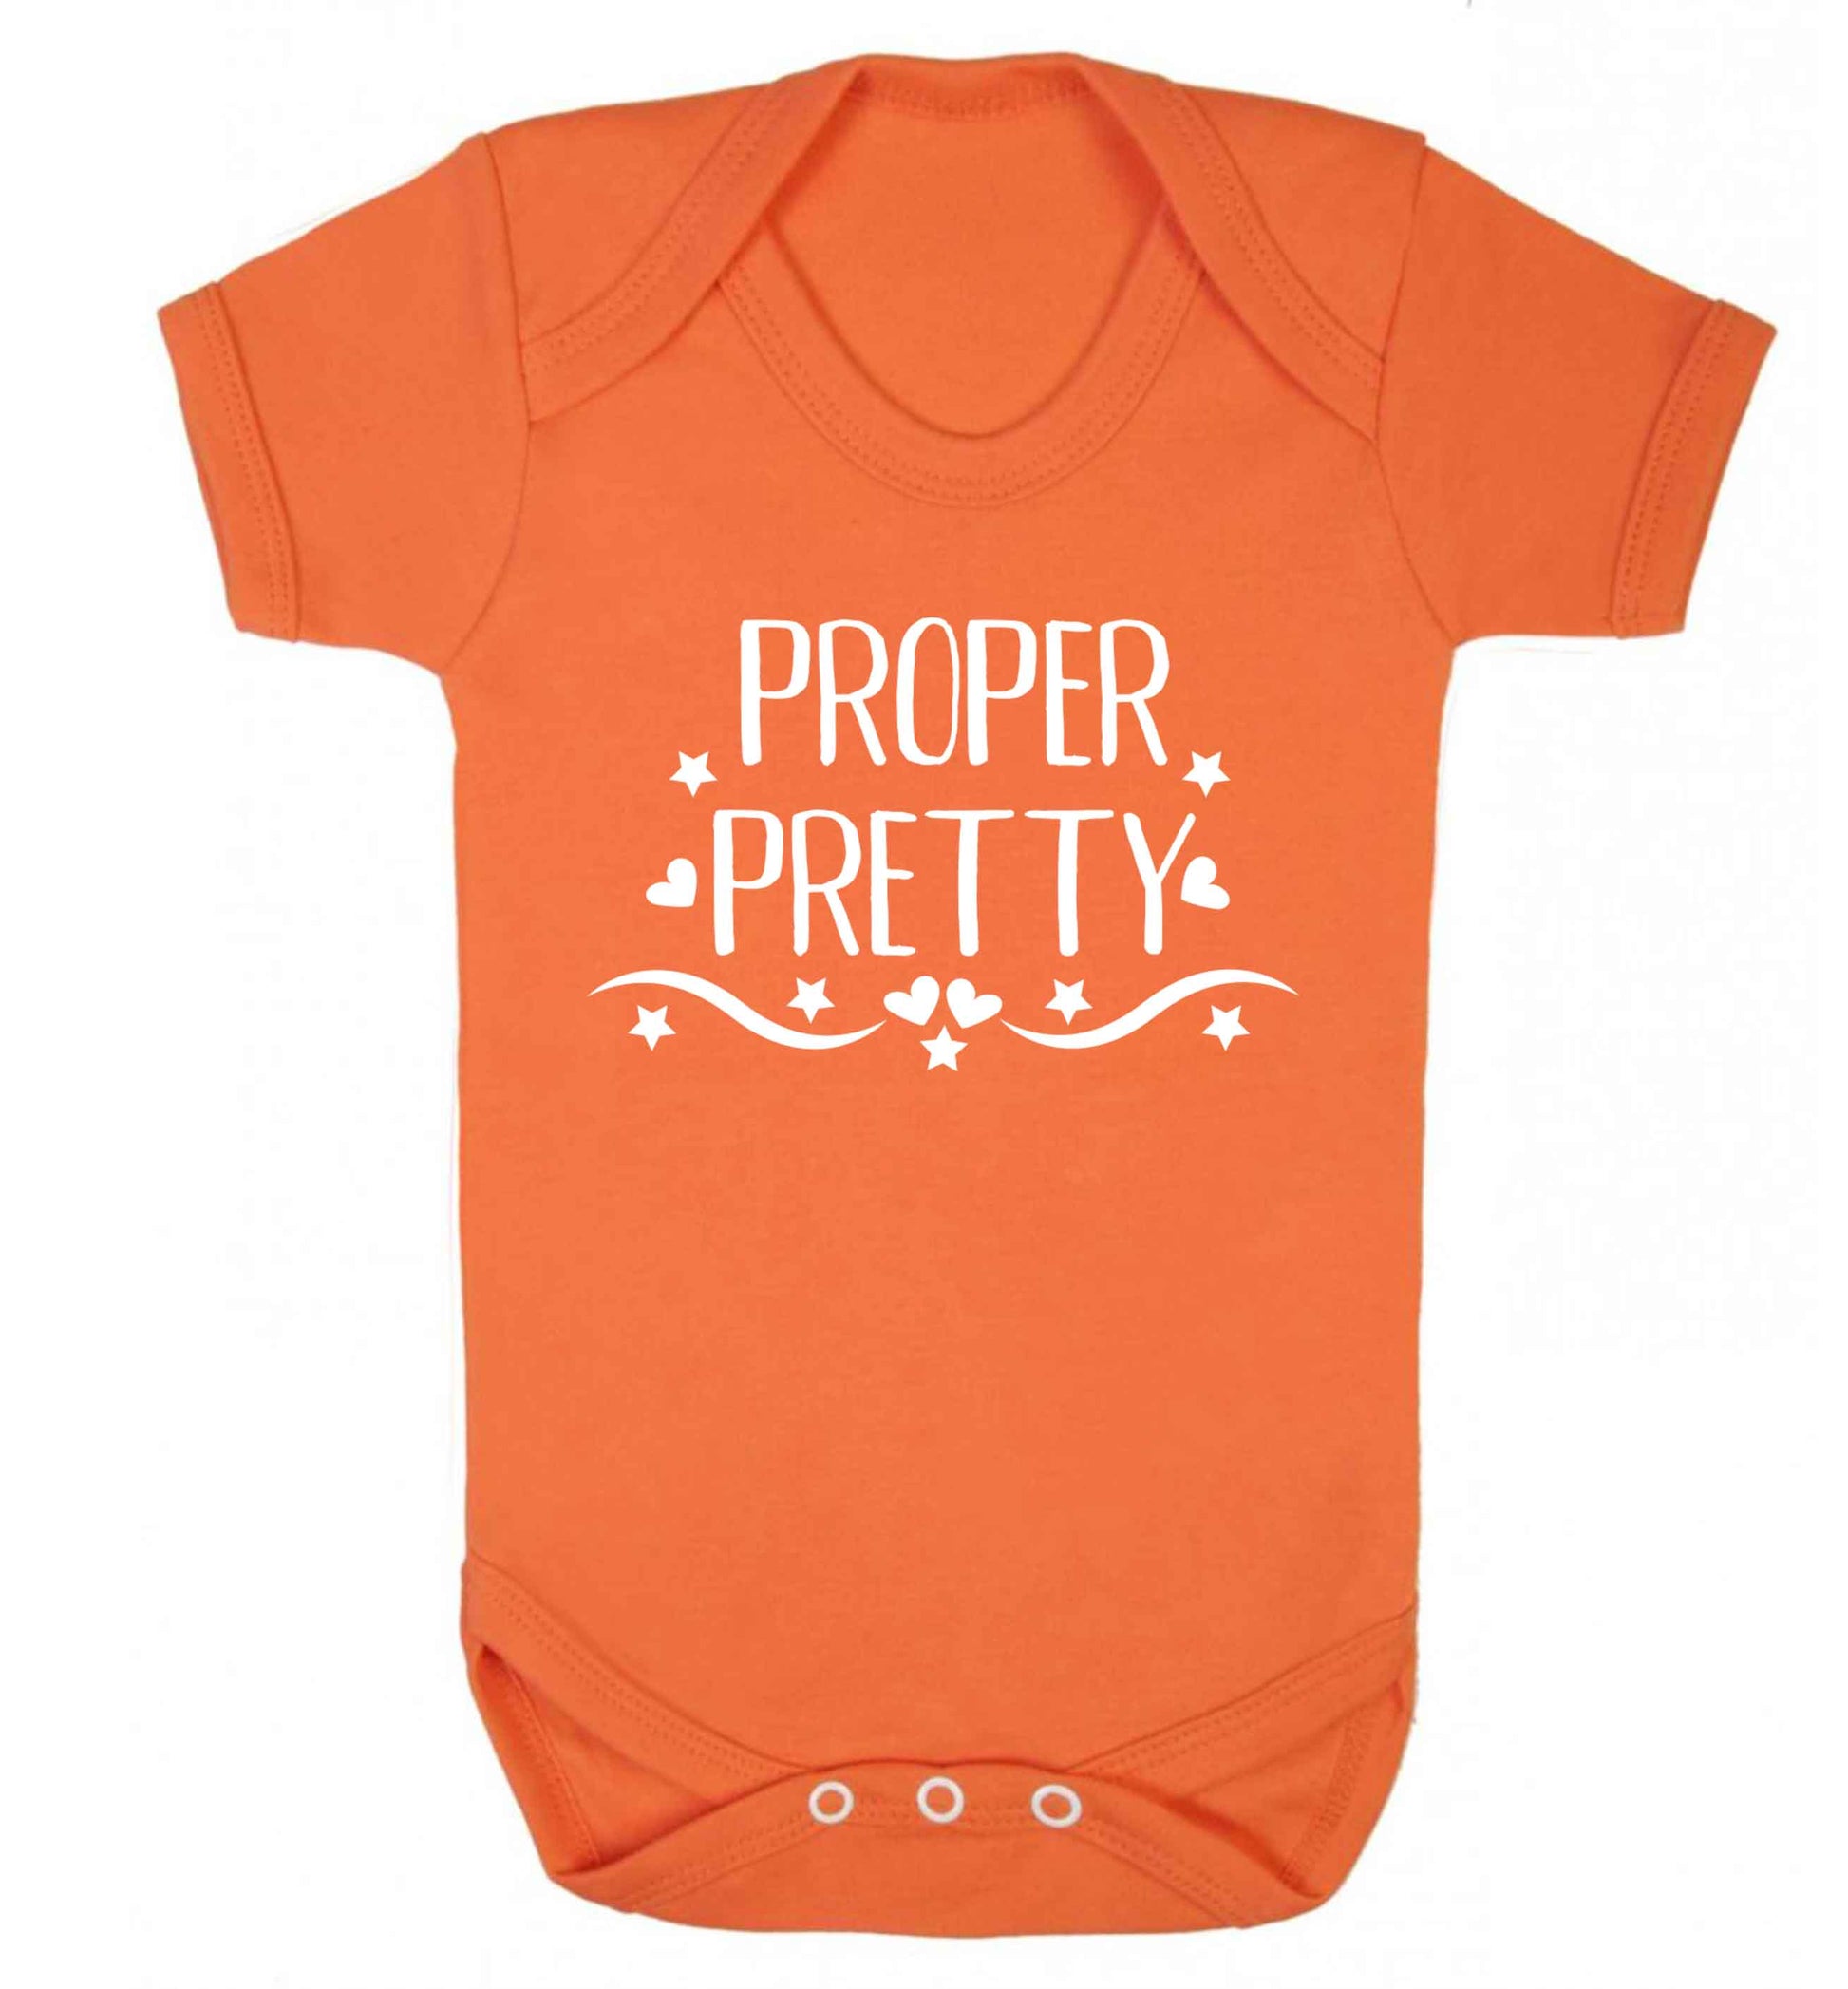 Proper pretty Baby Vest orange 18-24 months